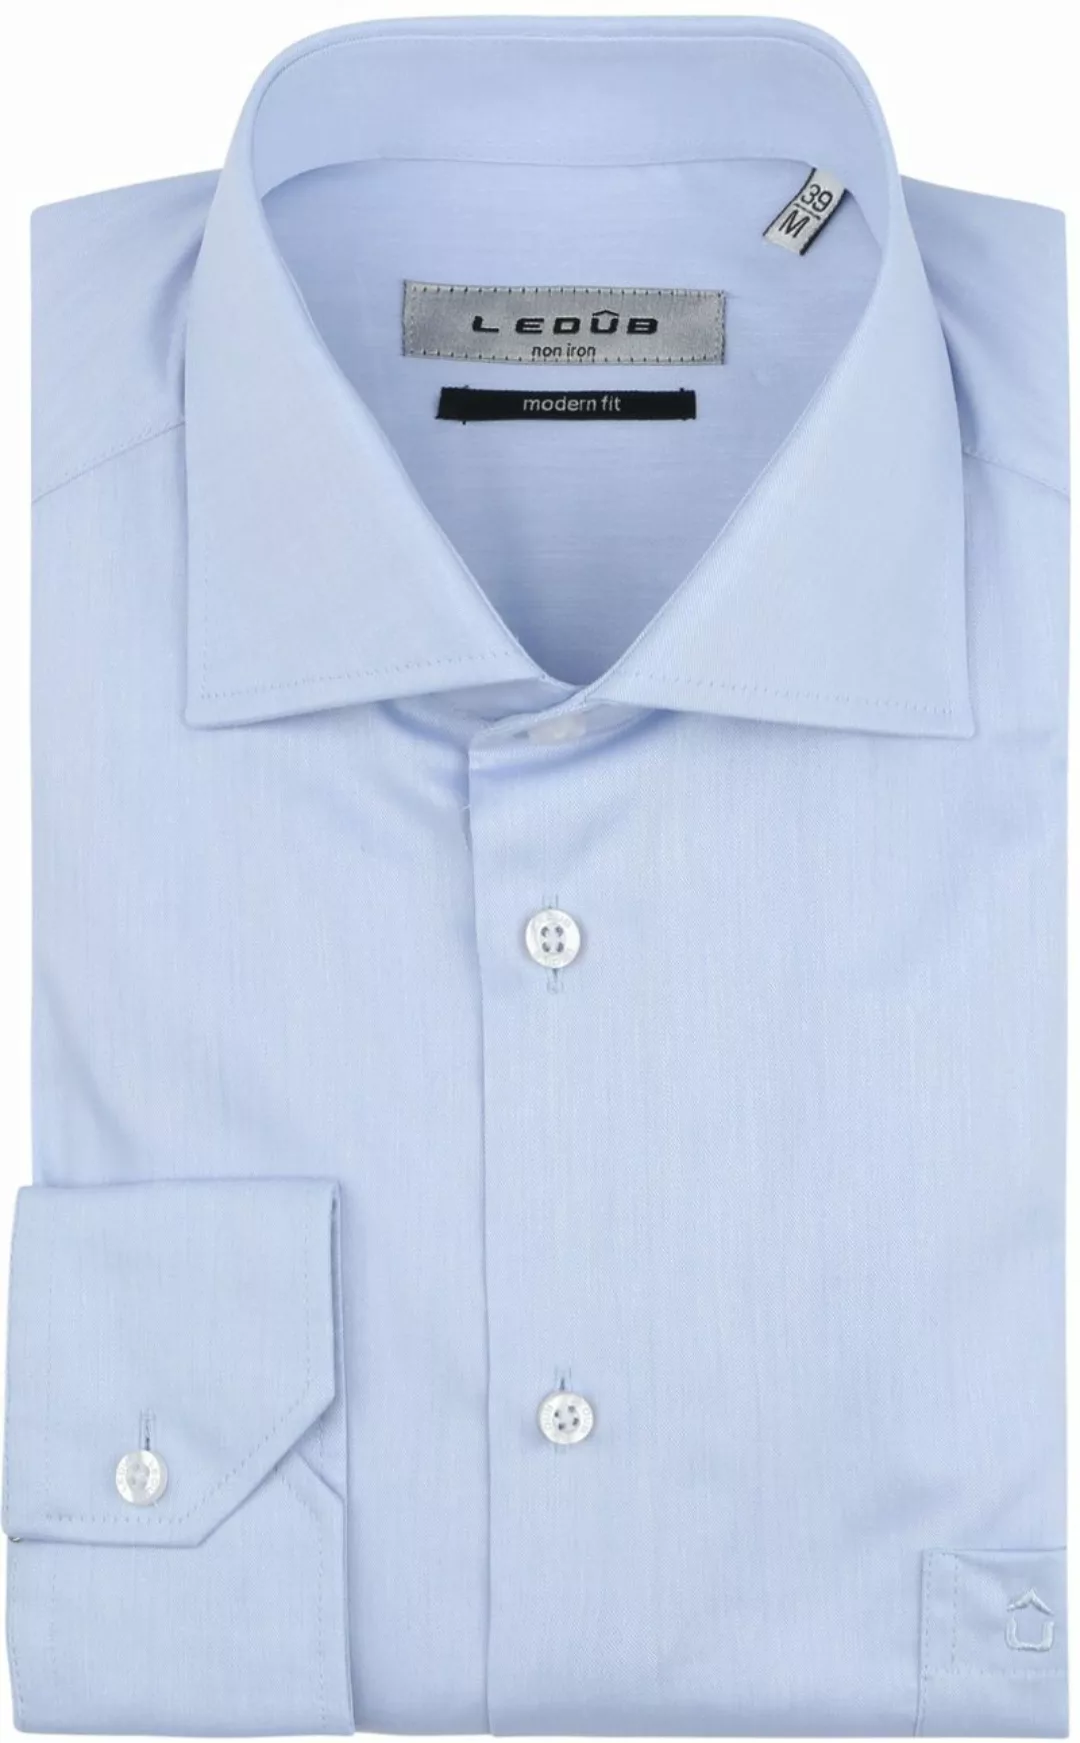 Ledub Hemd Hellblau Brusttassche Extra Long Sleeves - Größe 40 günstig online kaufen